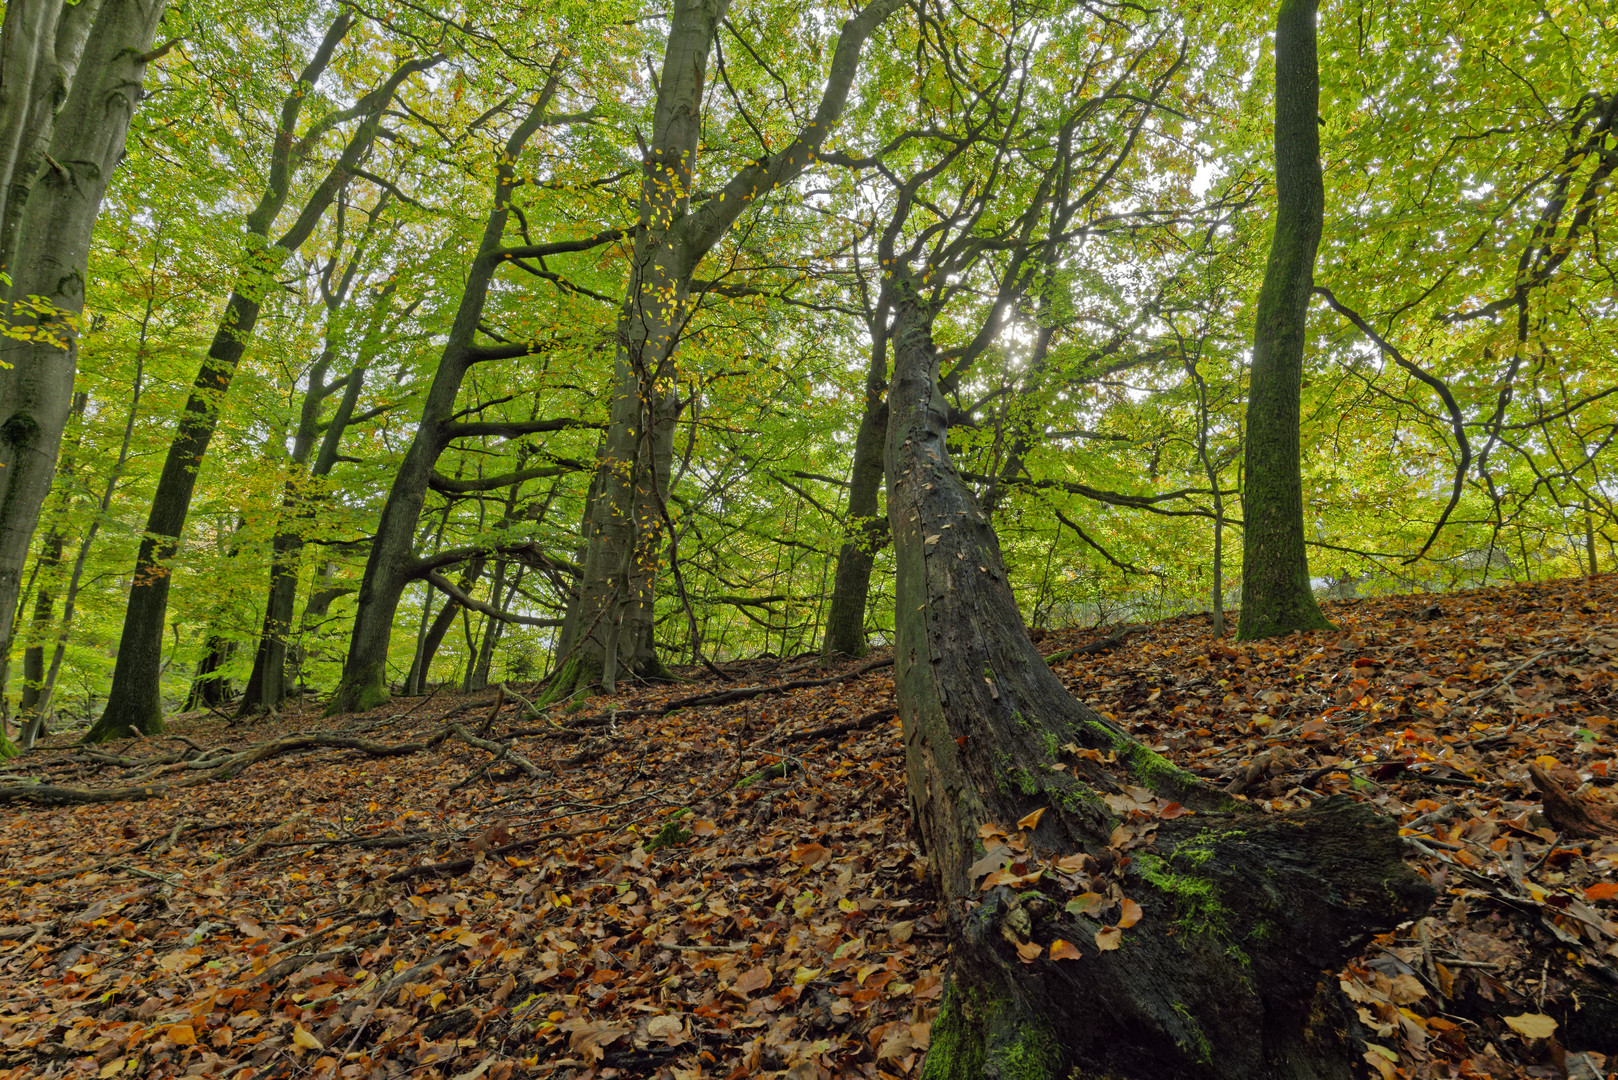 Waldmotive, hier: Herbstimpressionen im Wald (14)